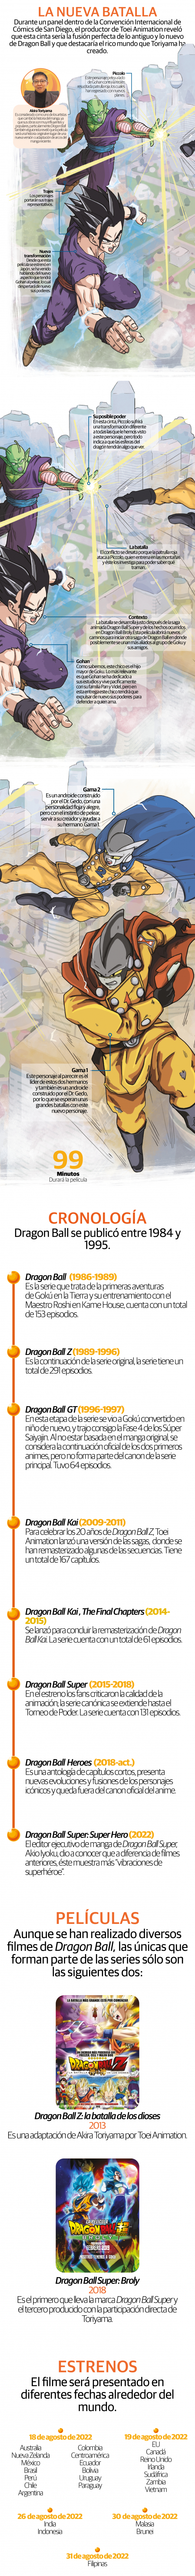 Dragon Ball Super: Super Hero, el momento de Piccolo